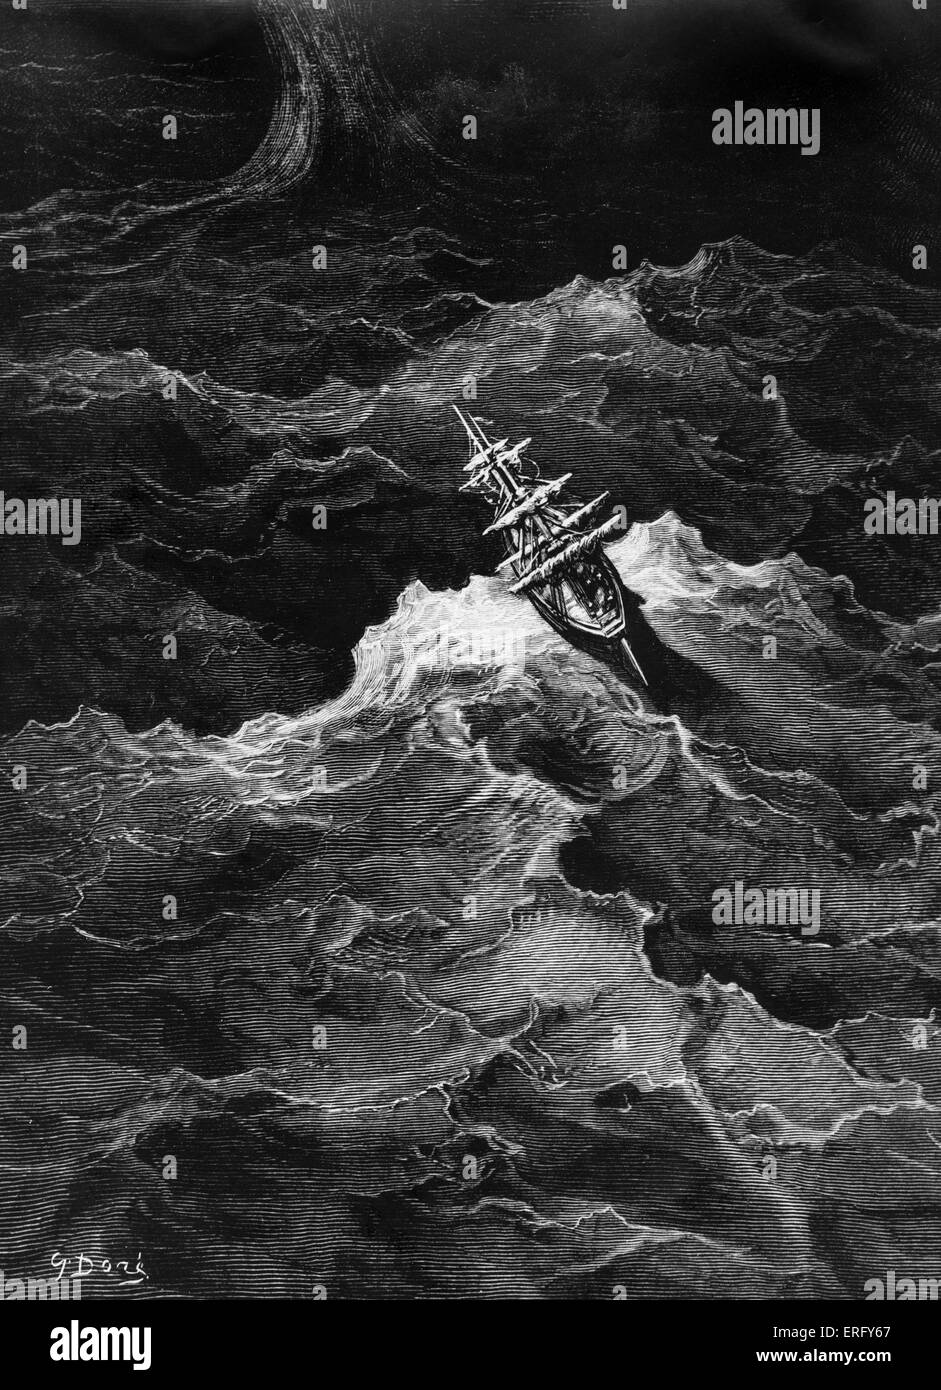 Das Schiff floh den Sturm. Illustration von Gustave Dore, the Ancient Mariner von Coleridge, geschrieben im Jahre 1797 / 98. Stockfoto